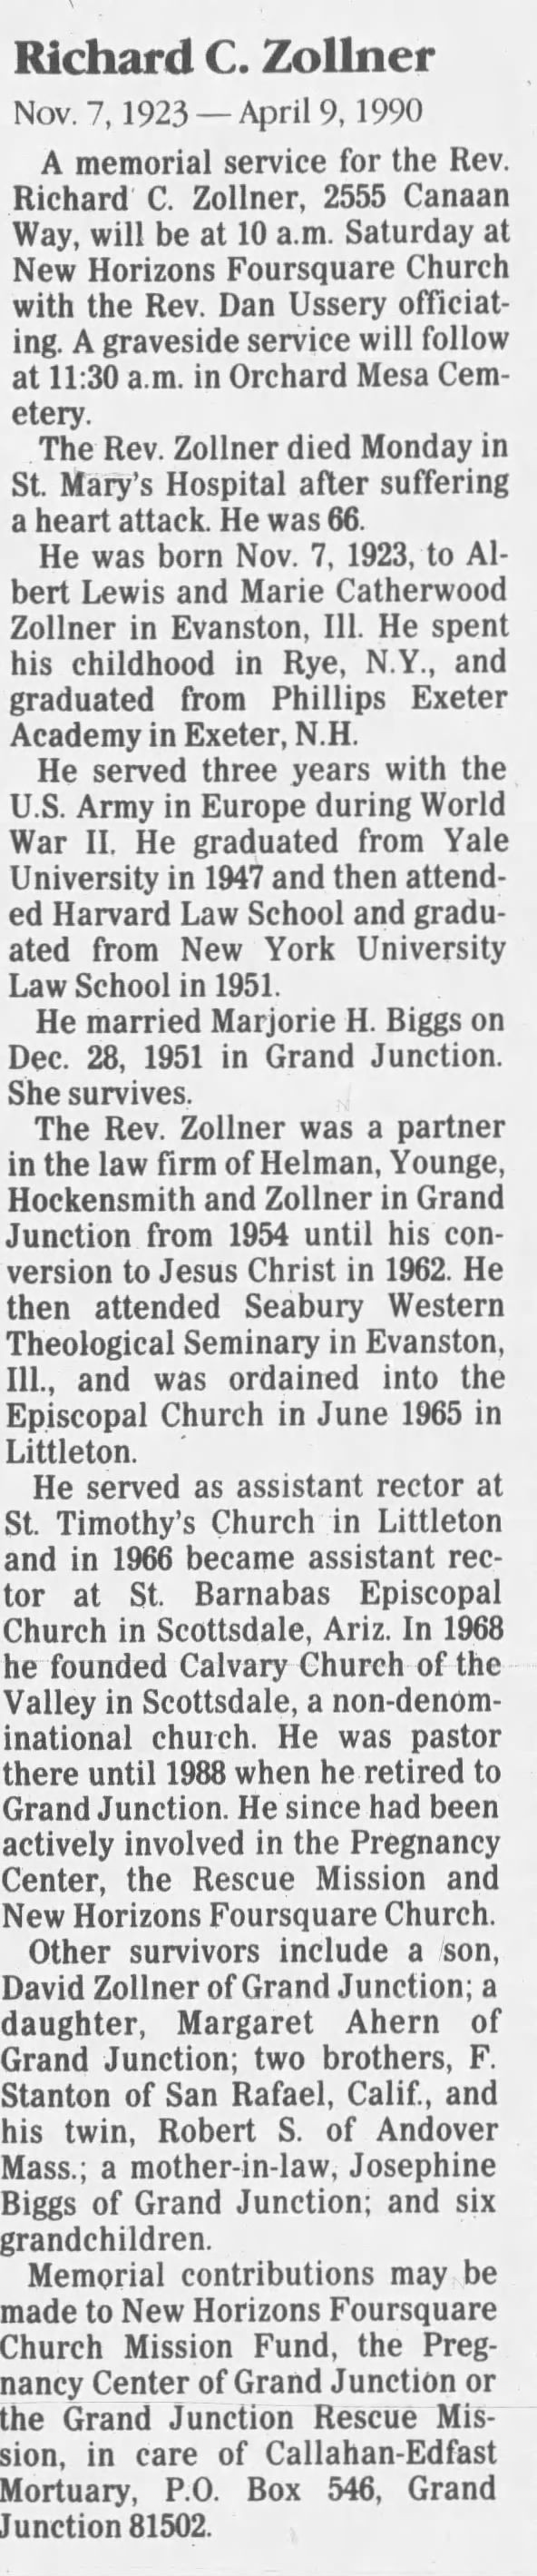 Obituary for Richard C. Zollner, 1923-1990 (Aged 66)